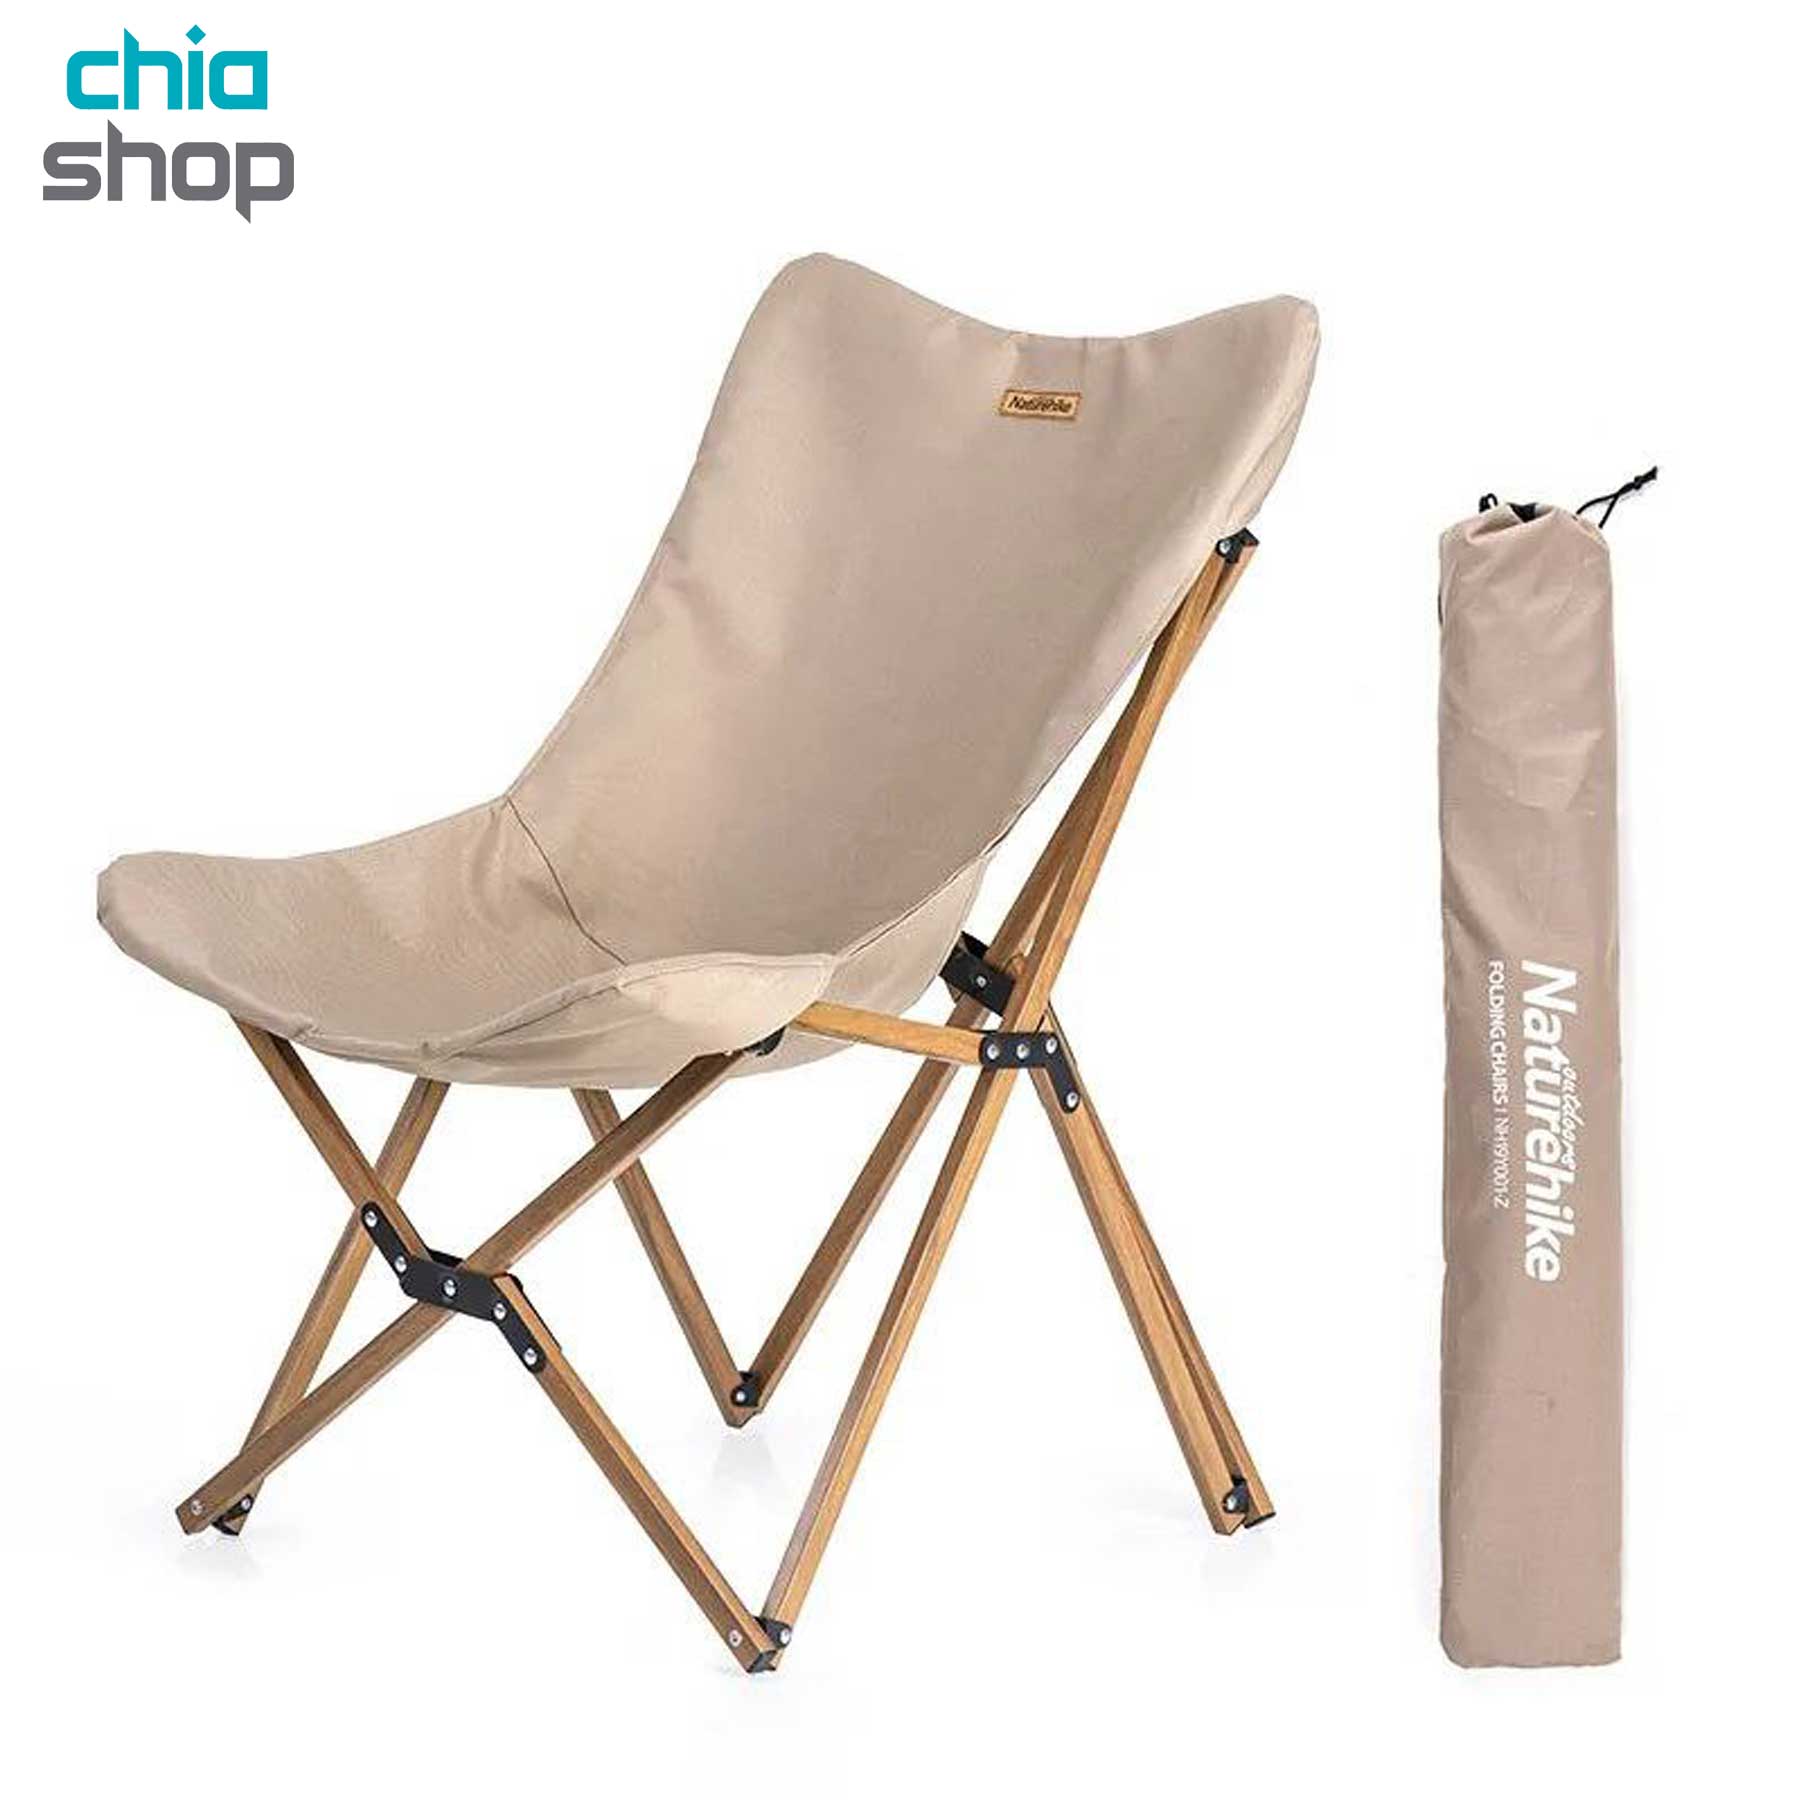 صندلی چوبی نیچرهایک مدل NH19Y001-Z